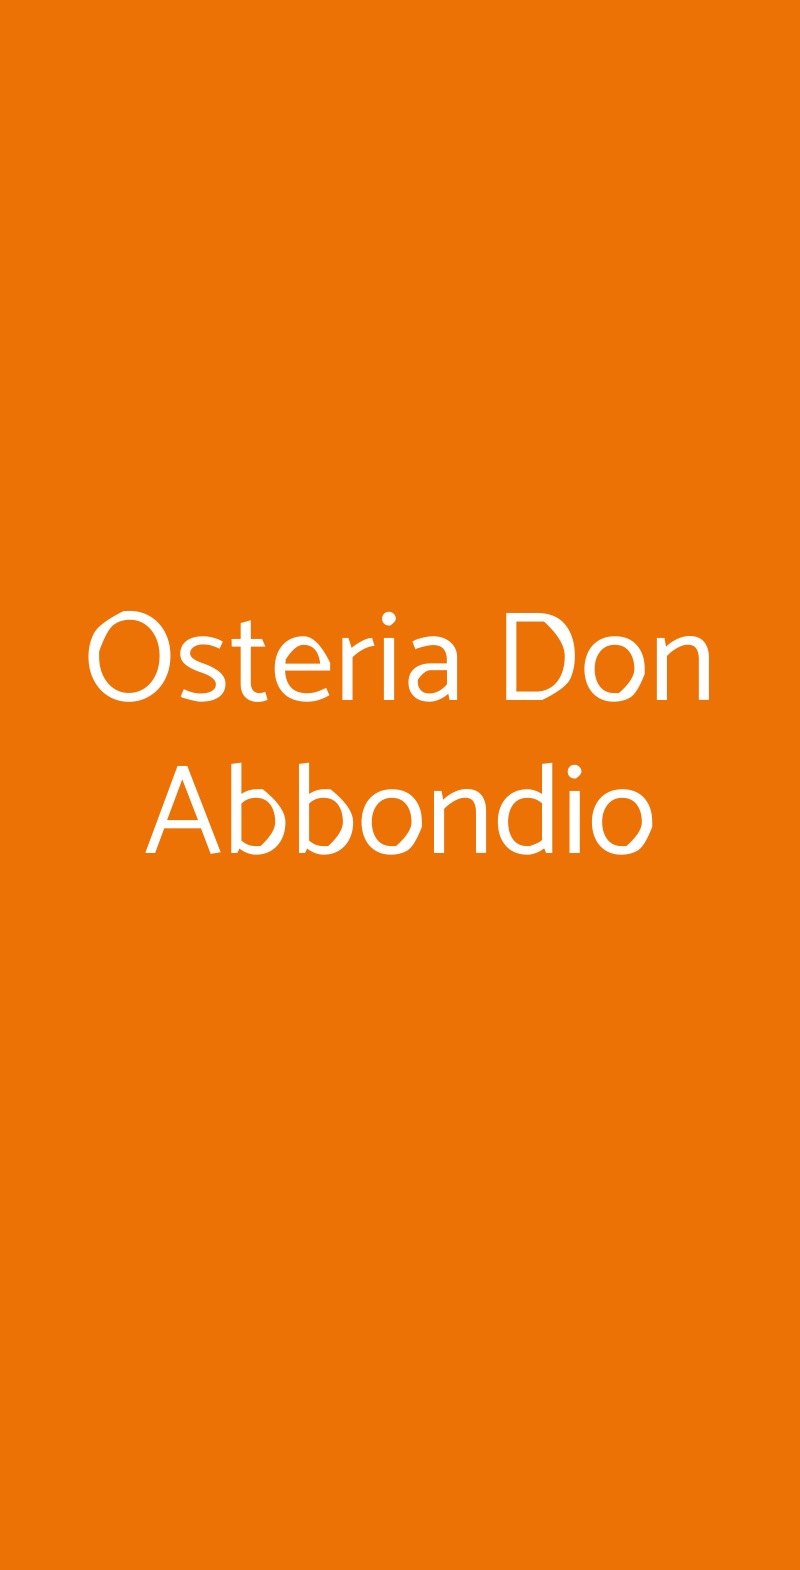 Osteria Don Abbondio Forli menù 1 pagina